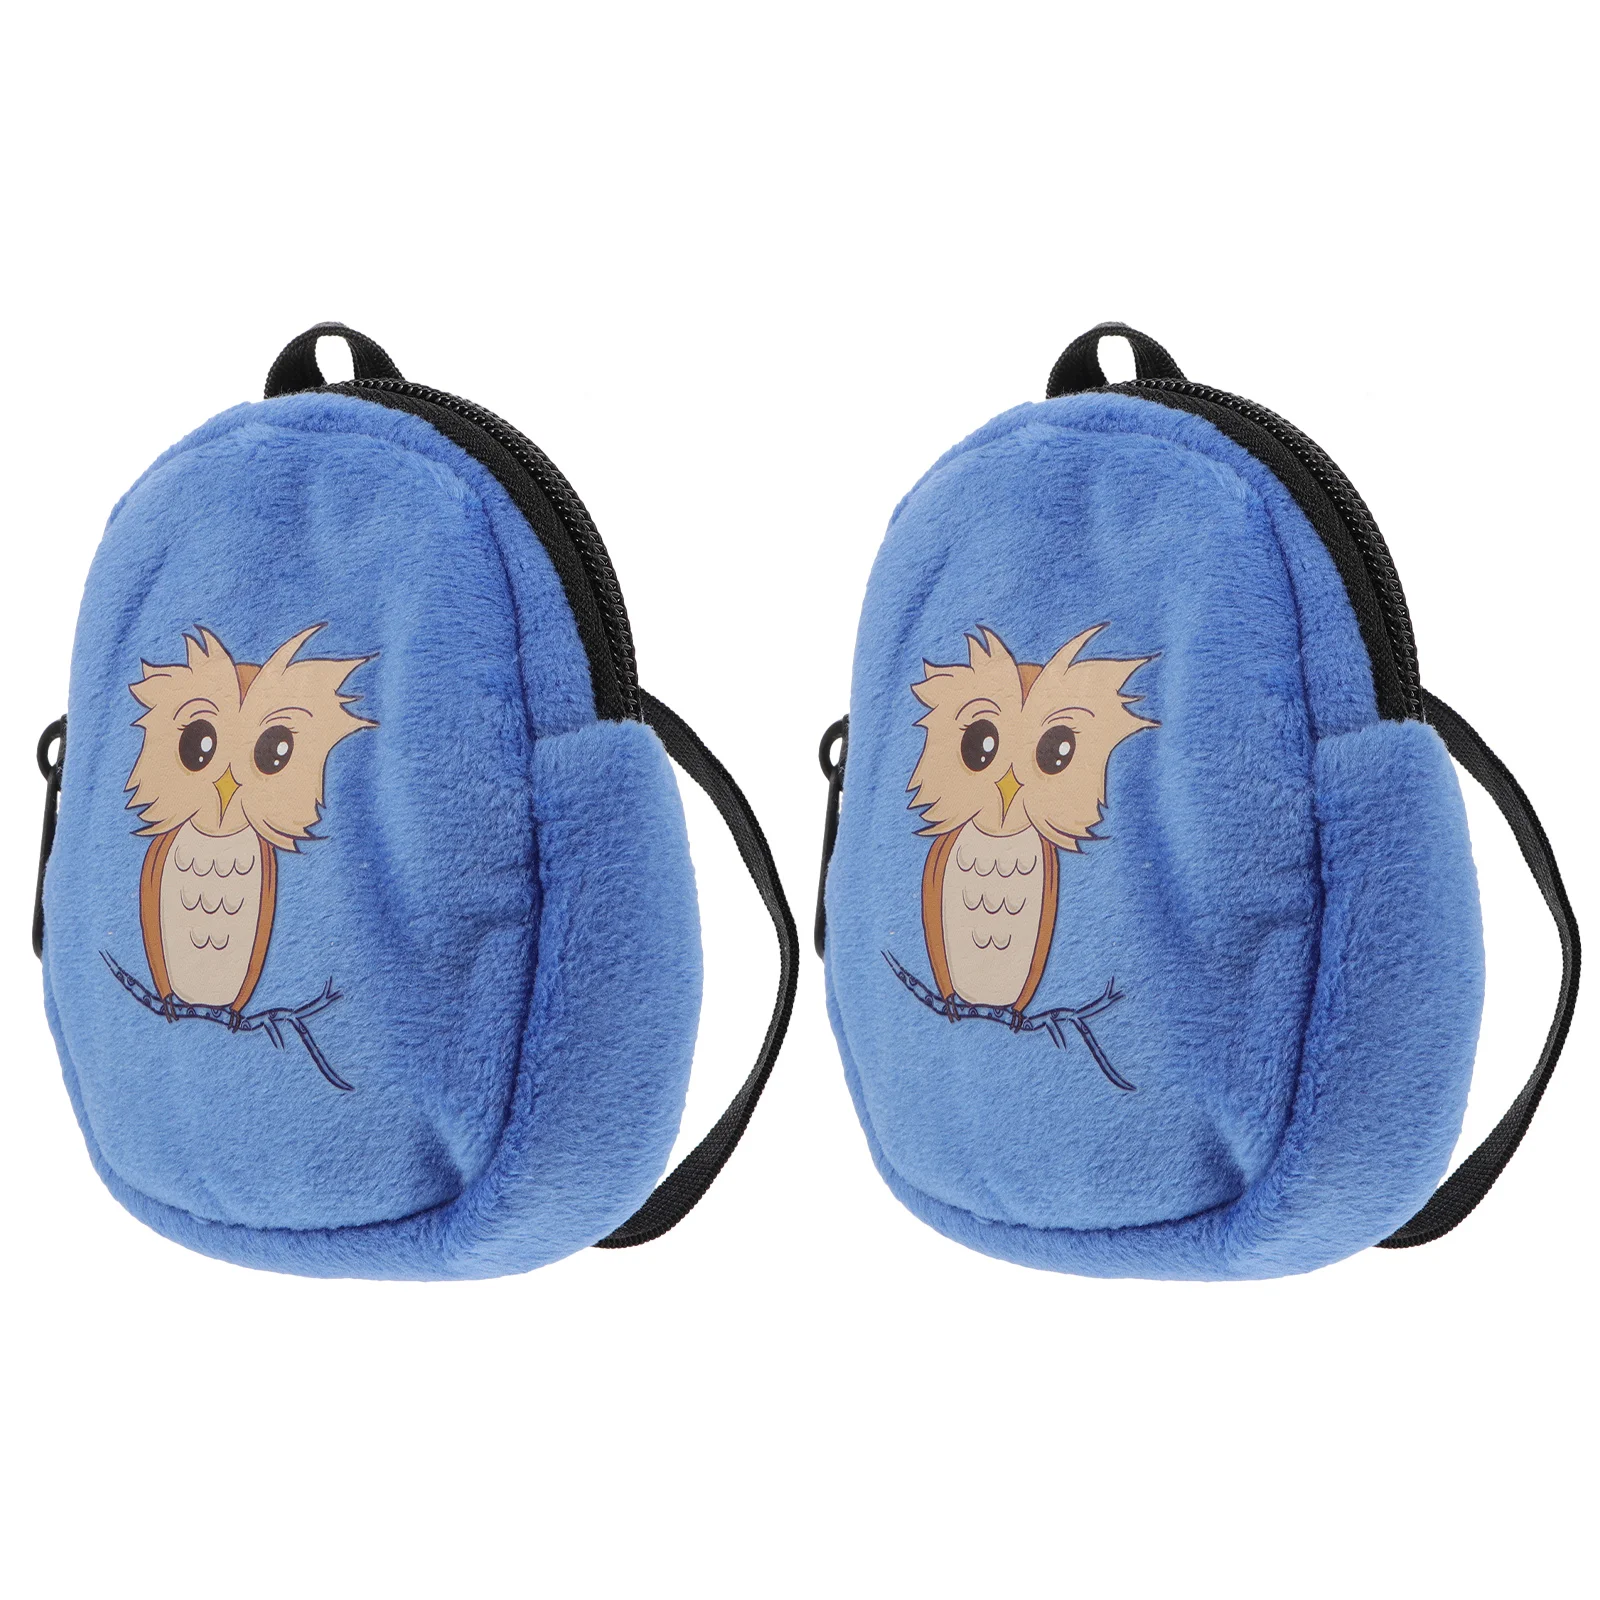 Baby Accessories Baby Accessories Accessory Backpack Baby Accessories Zipper Bag